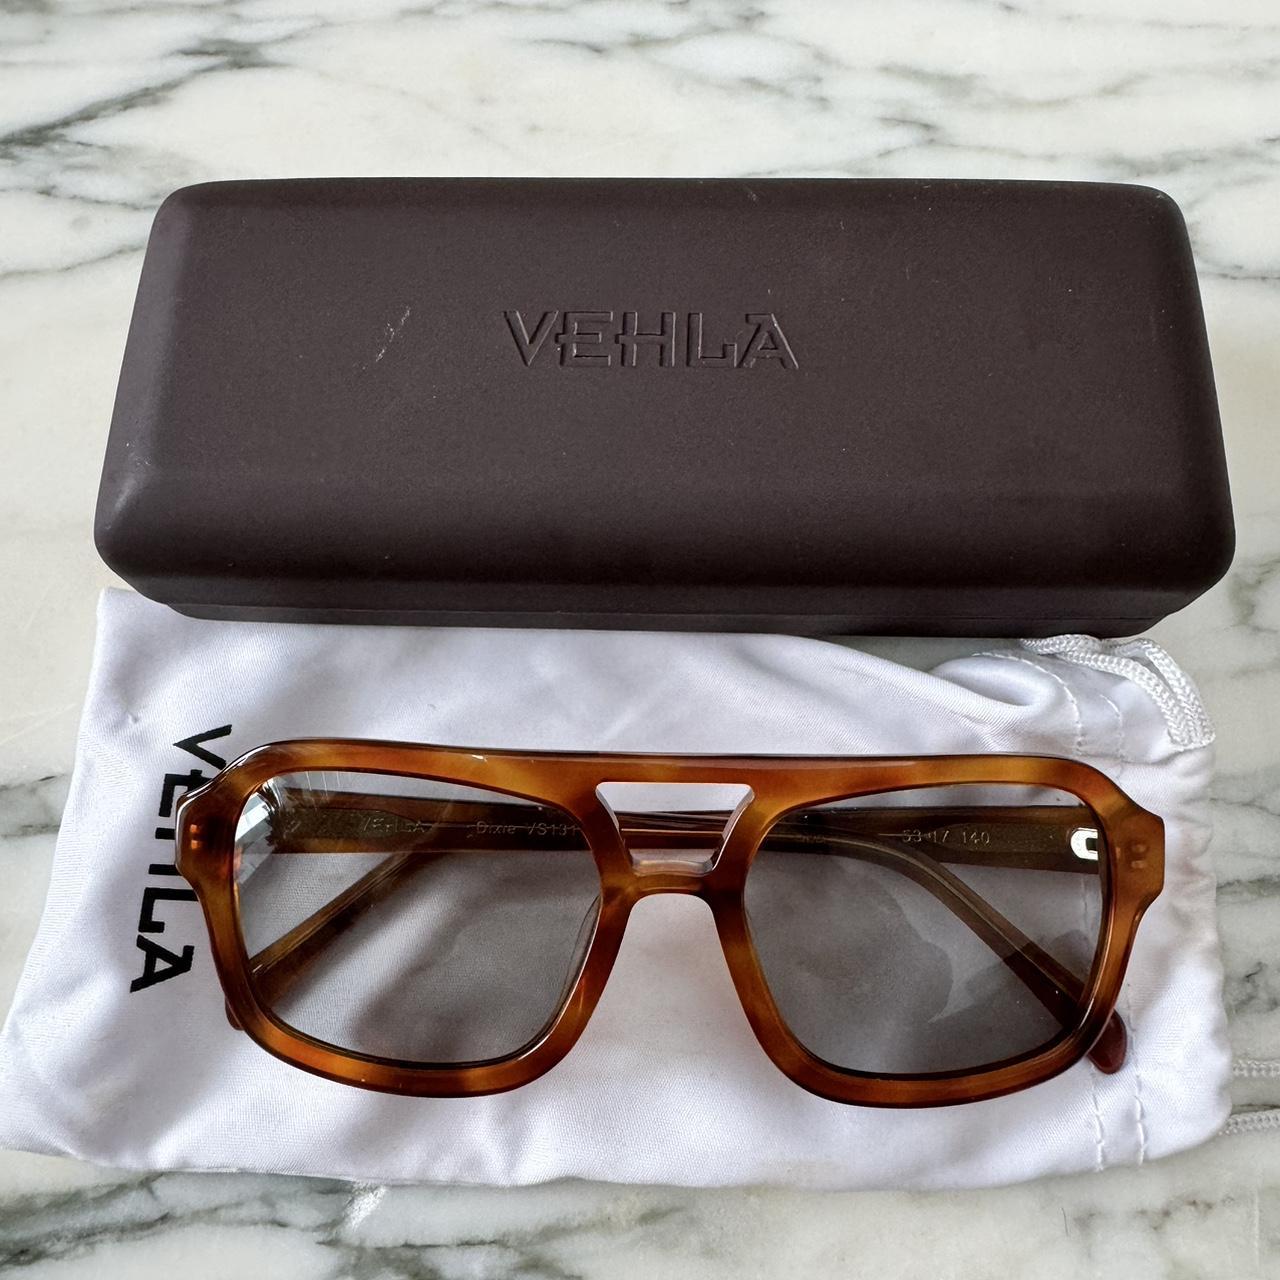 Vehla eyeware tortoiseshell framed sunglasses. Comes... - Depop